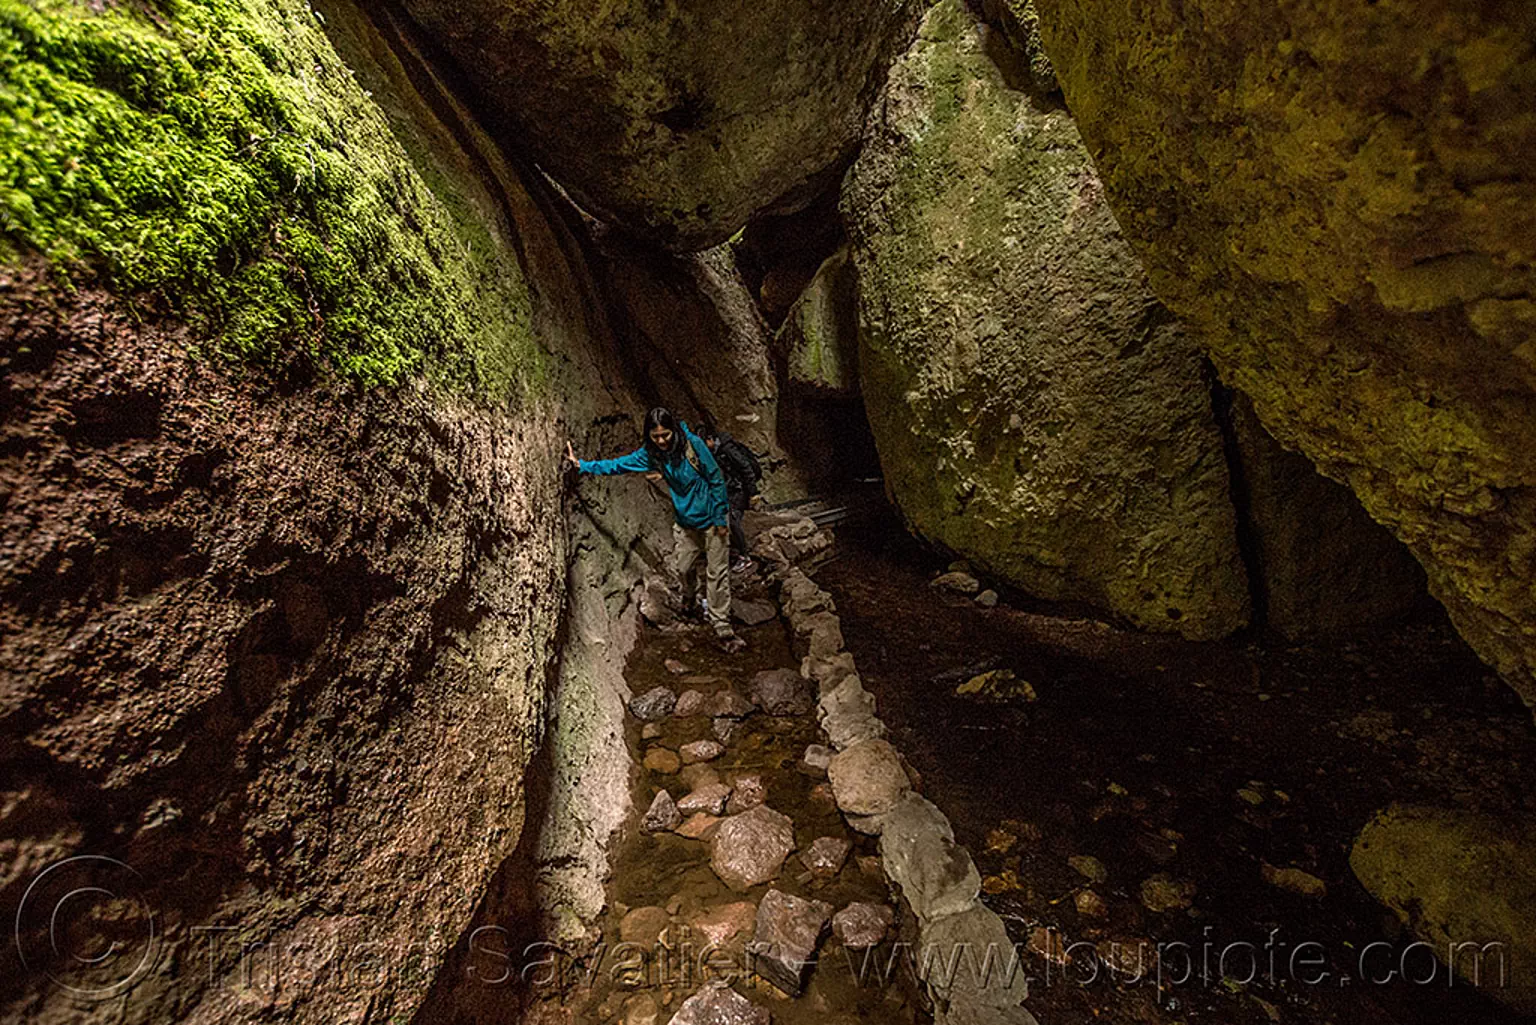 bear gulch cave trail - pinnacles national park (california), boulders, caving, gulch, hiking, moss, natural cave, pinnacles national park, spelunking, talus cave, trail, woman